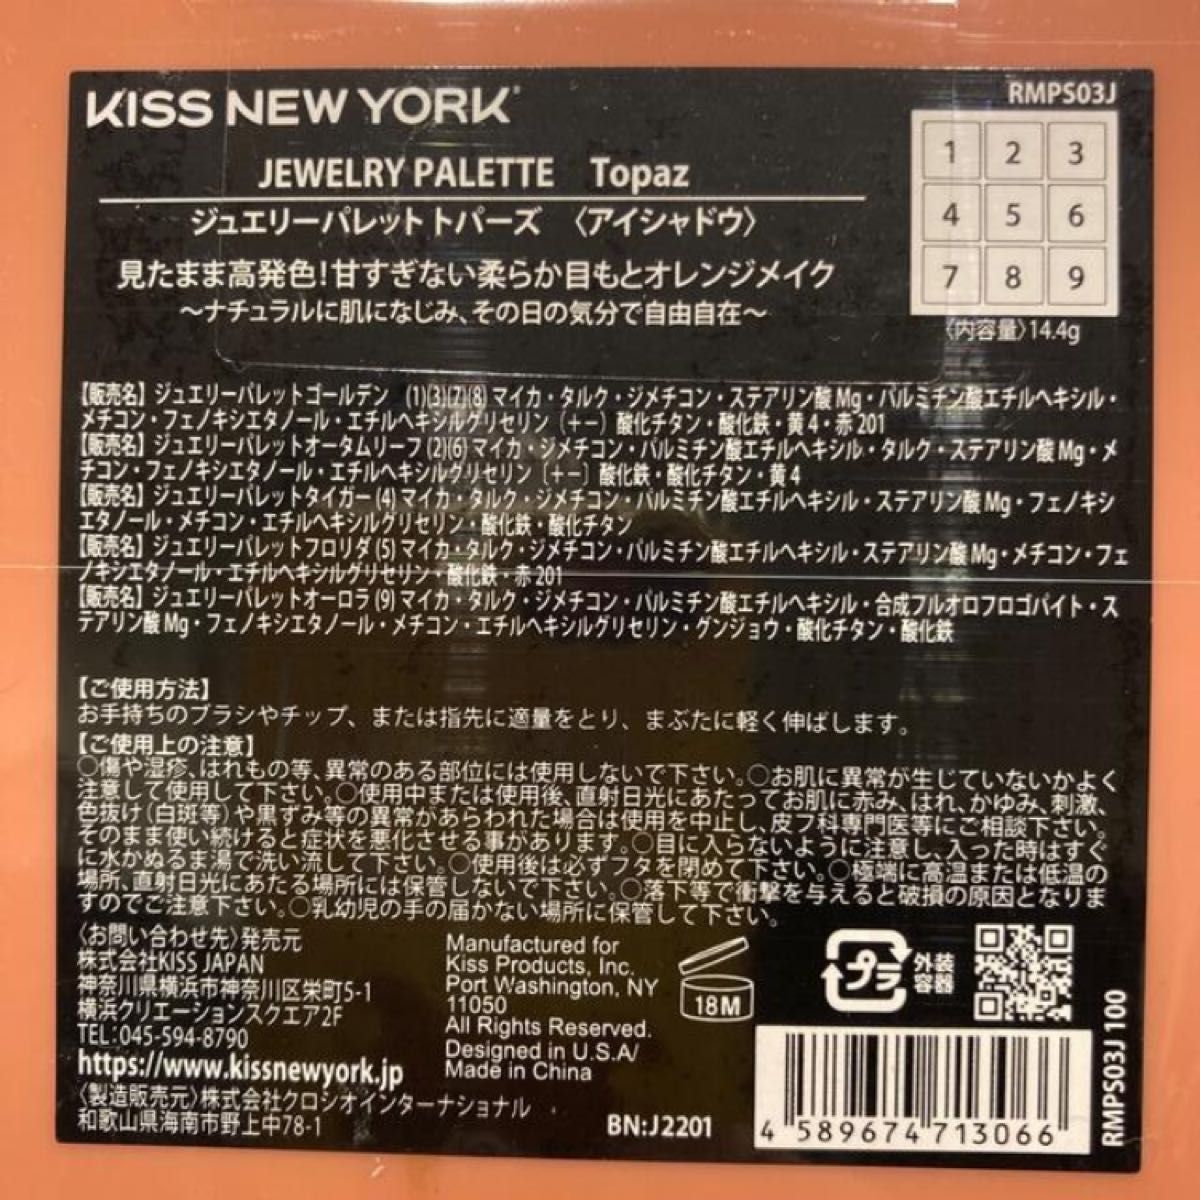 【新品未開封】キスニューヨーク KISS NEW YORK ジュエリーパレット トパーズ オレンジブラウン系